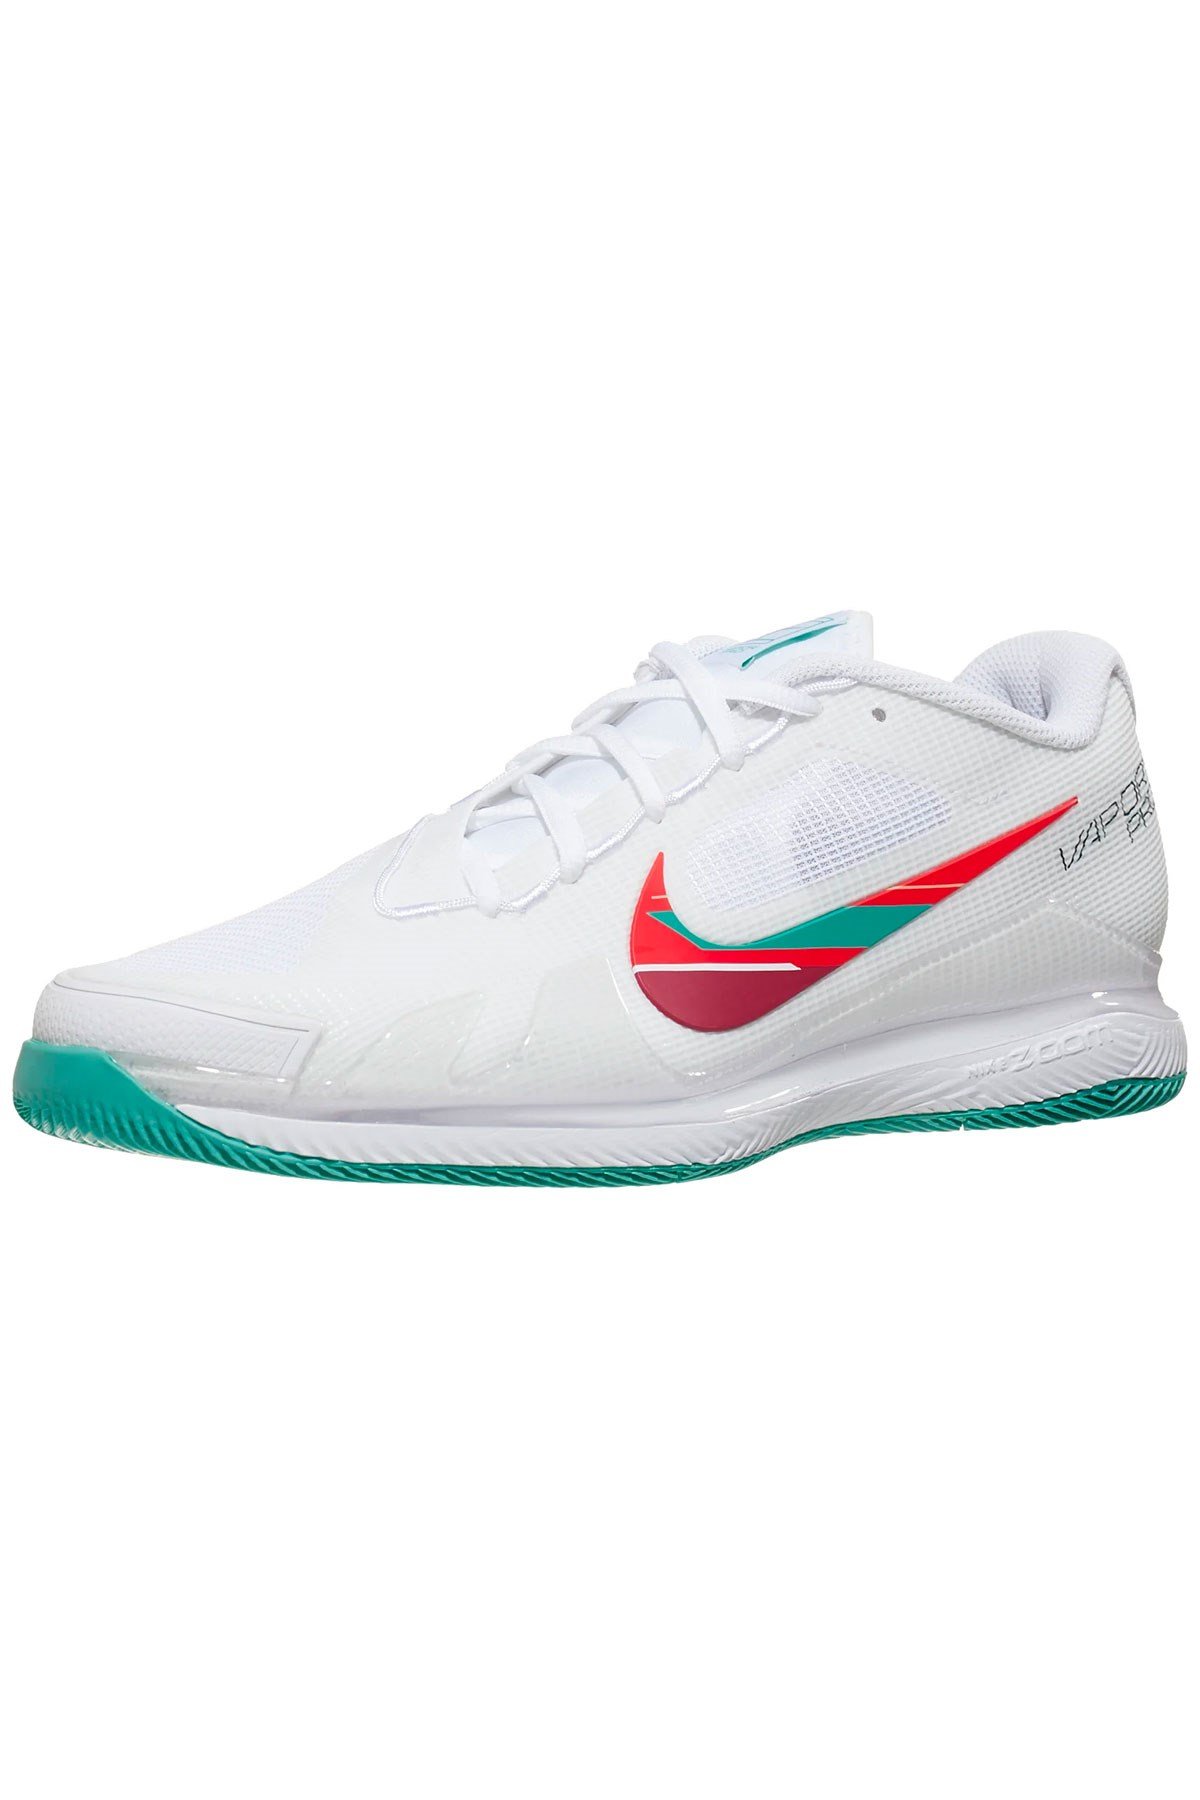 Nike Zoom Vapor Pro HC Beyaz Yeşil Kadın Tenis Ayakkabısı